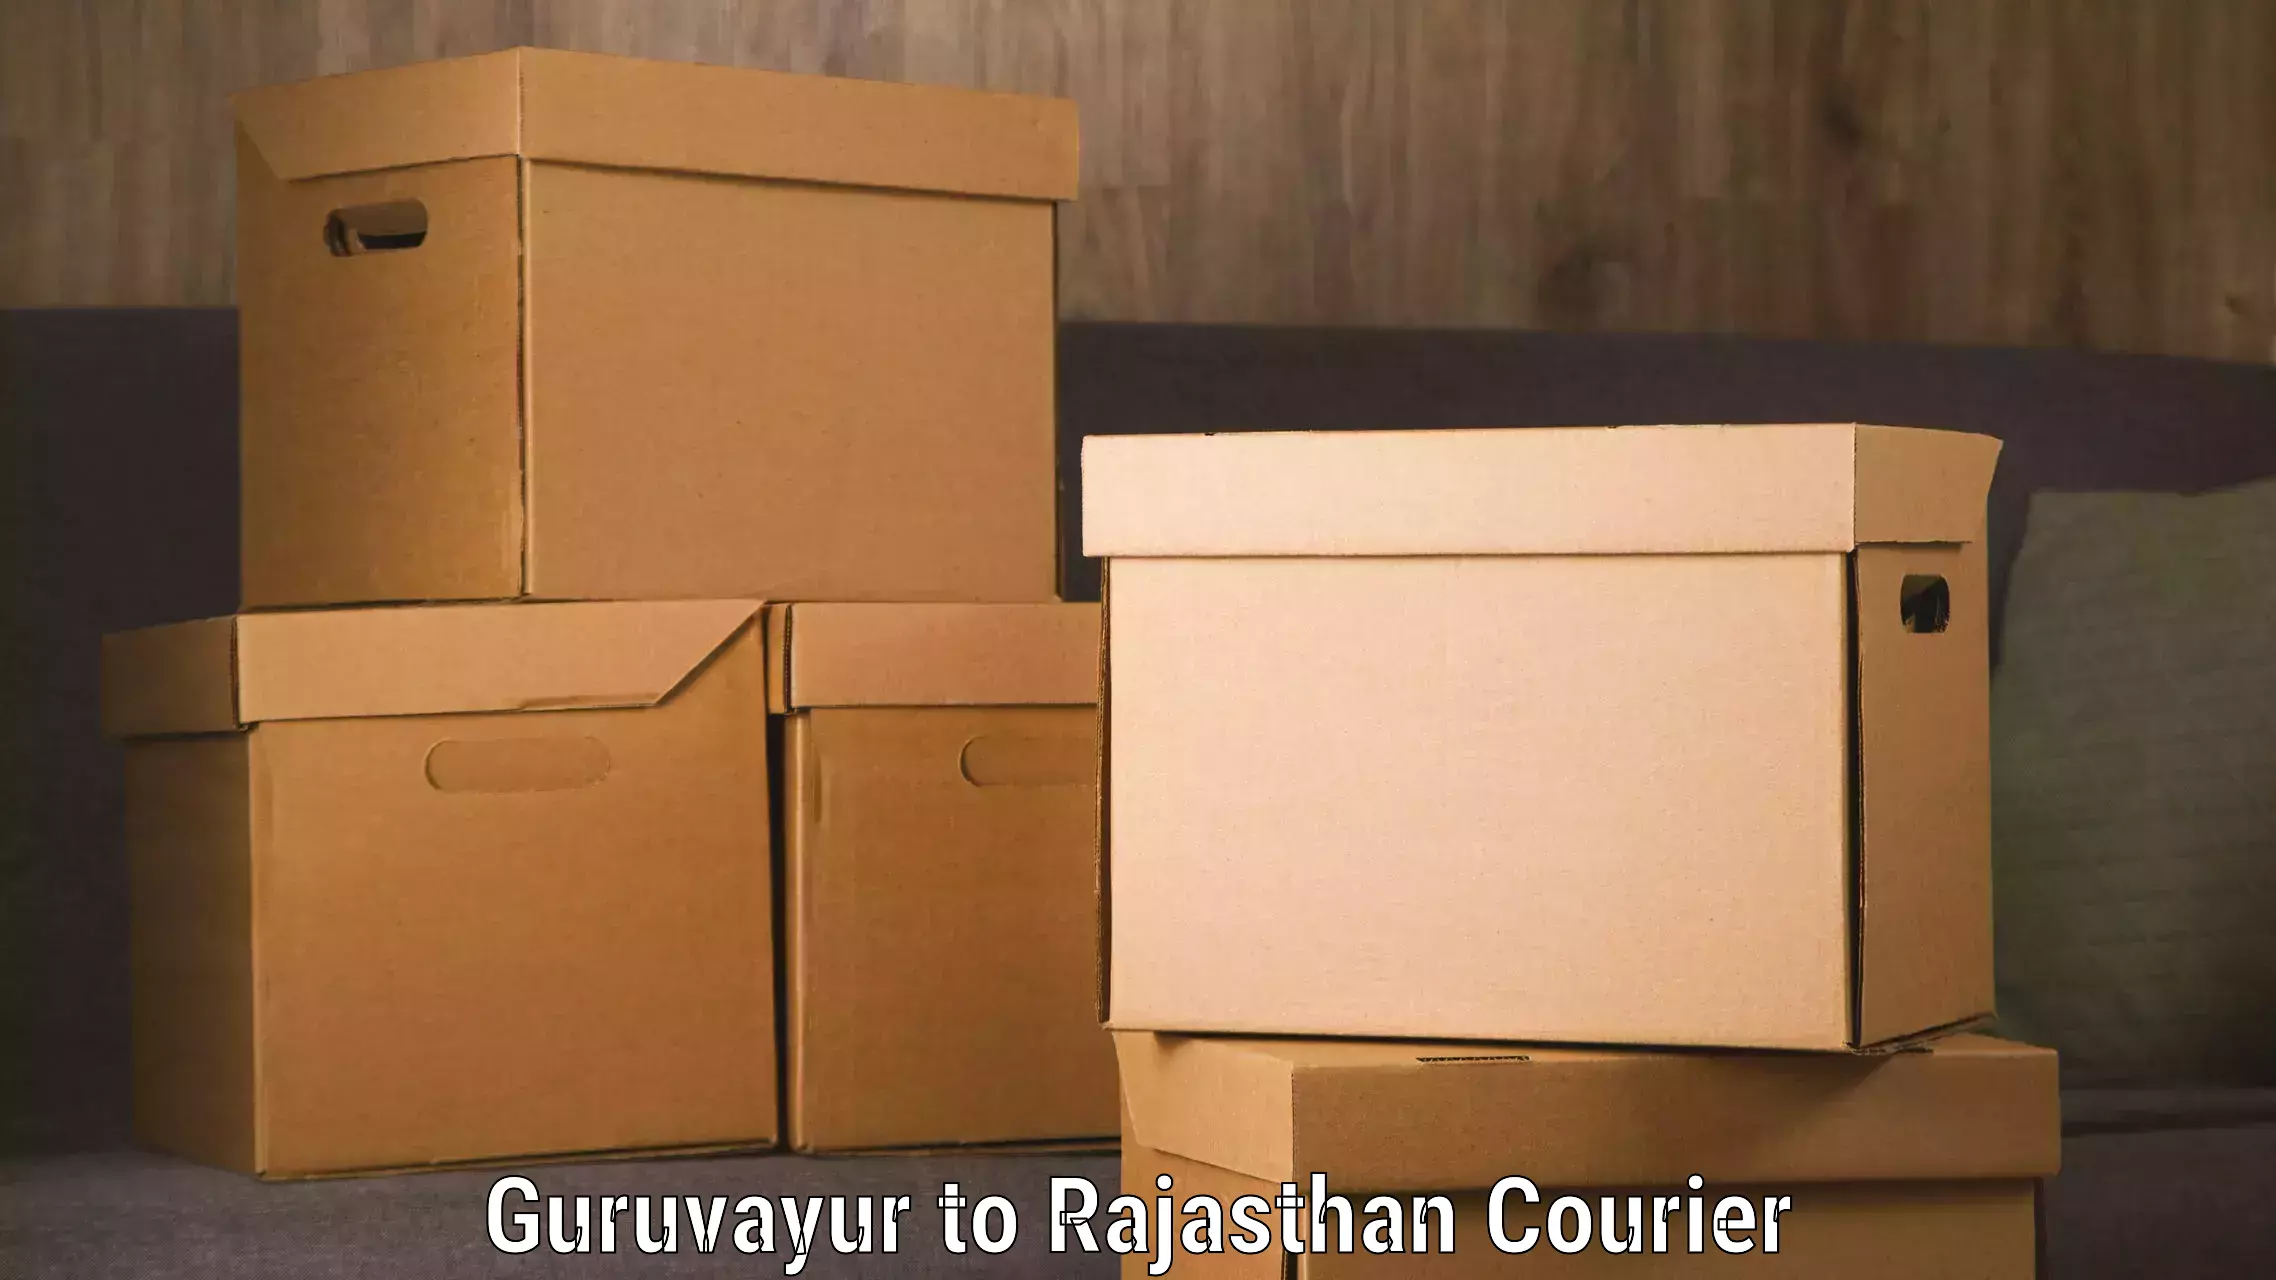 Digital courier platforms Guruvayur to Sardarshahr